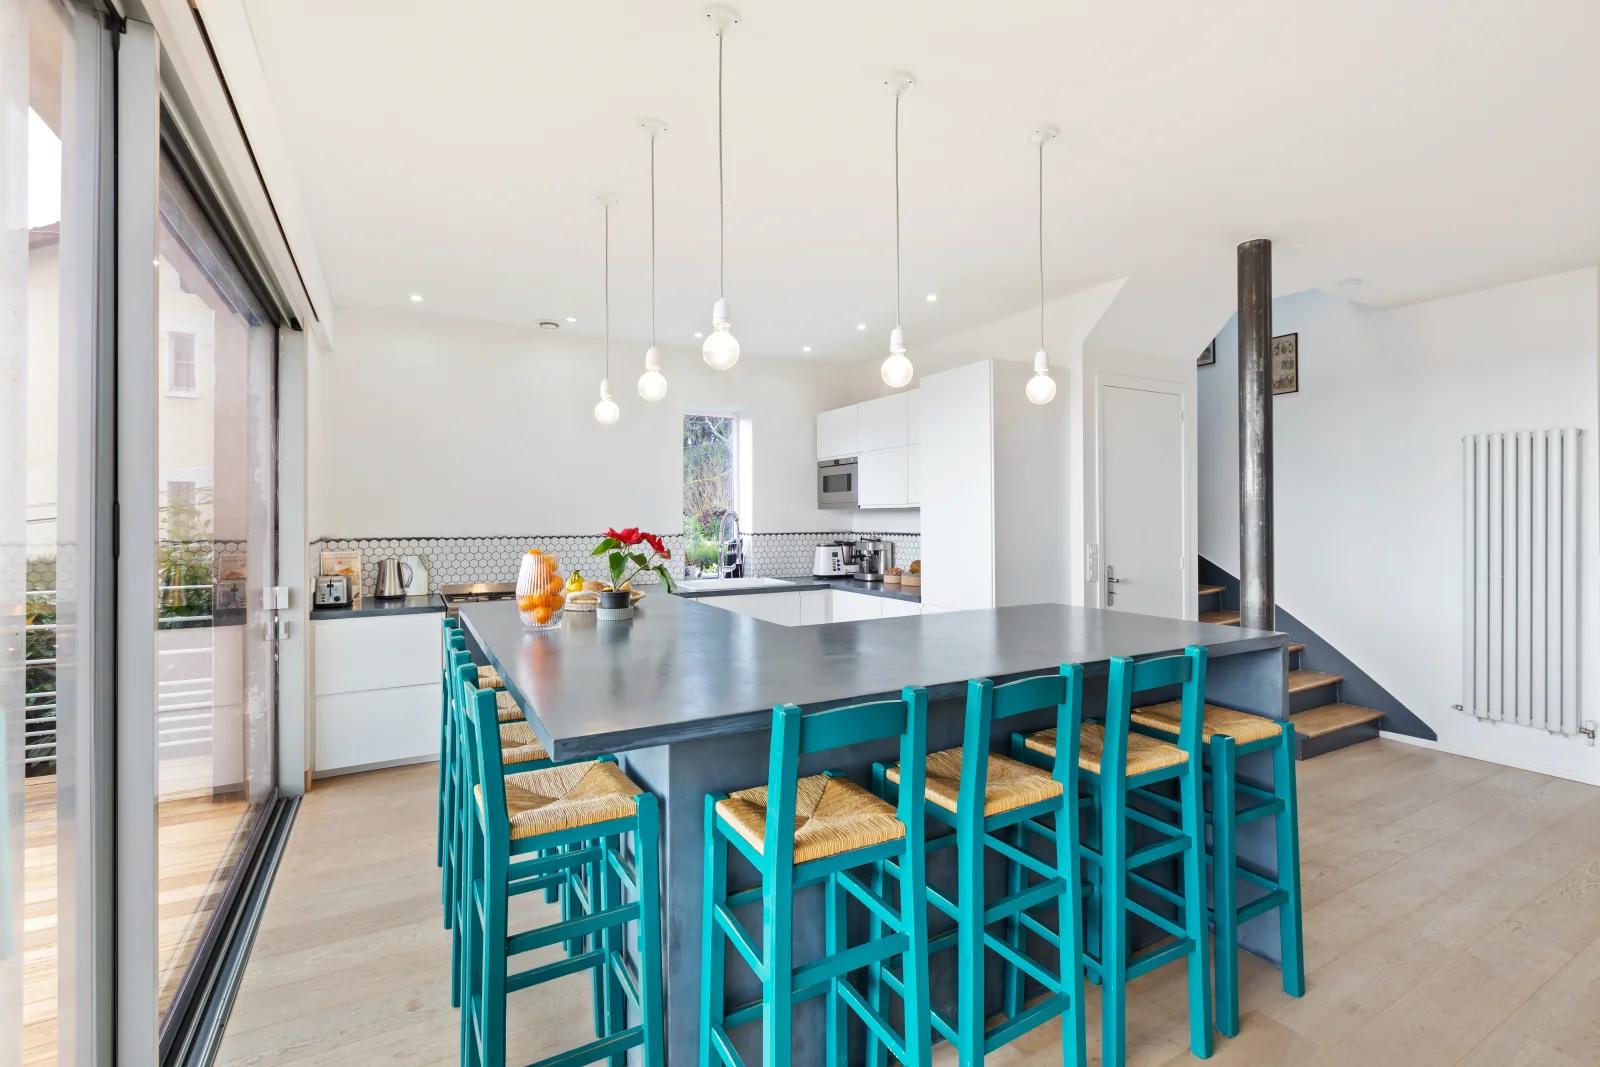 Kitchen dentro 100 m² de espacio verde para relajarse - 3